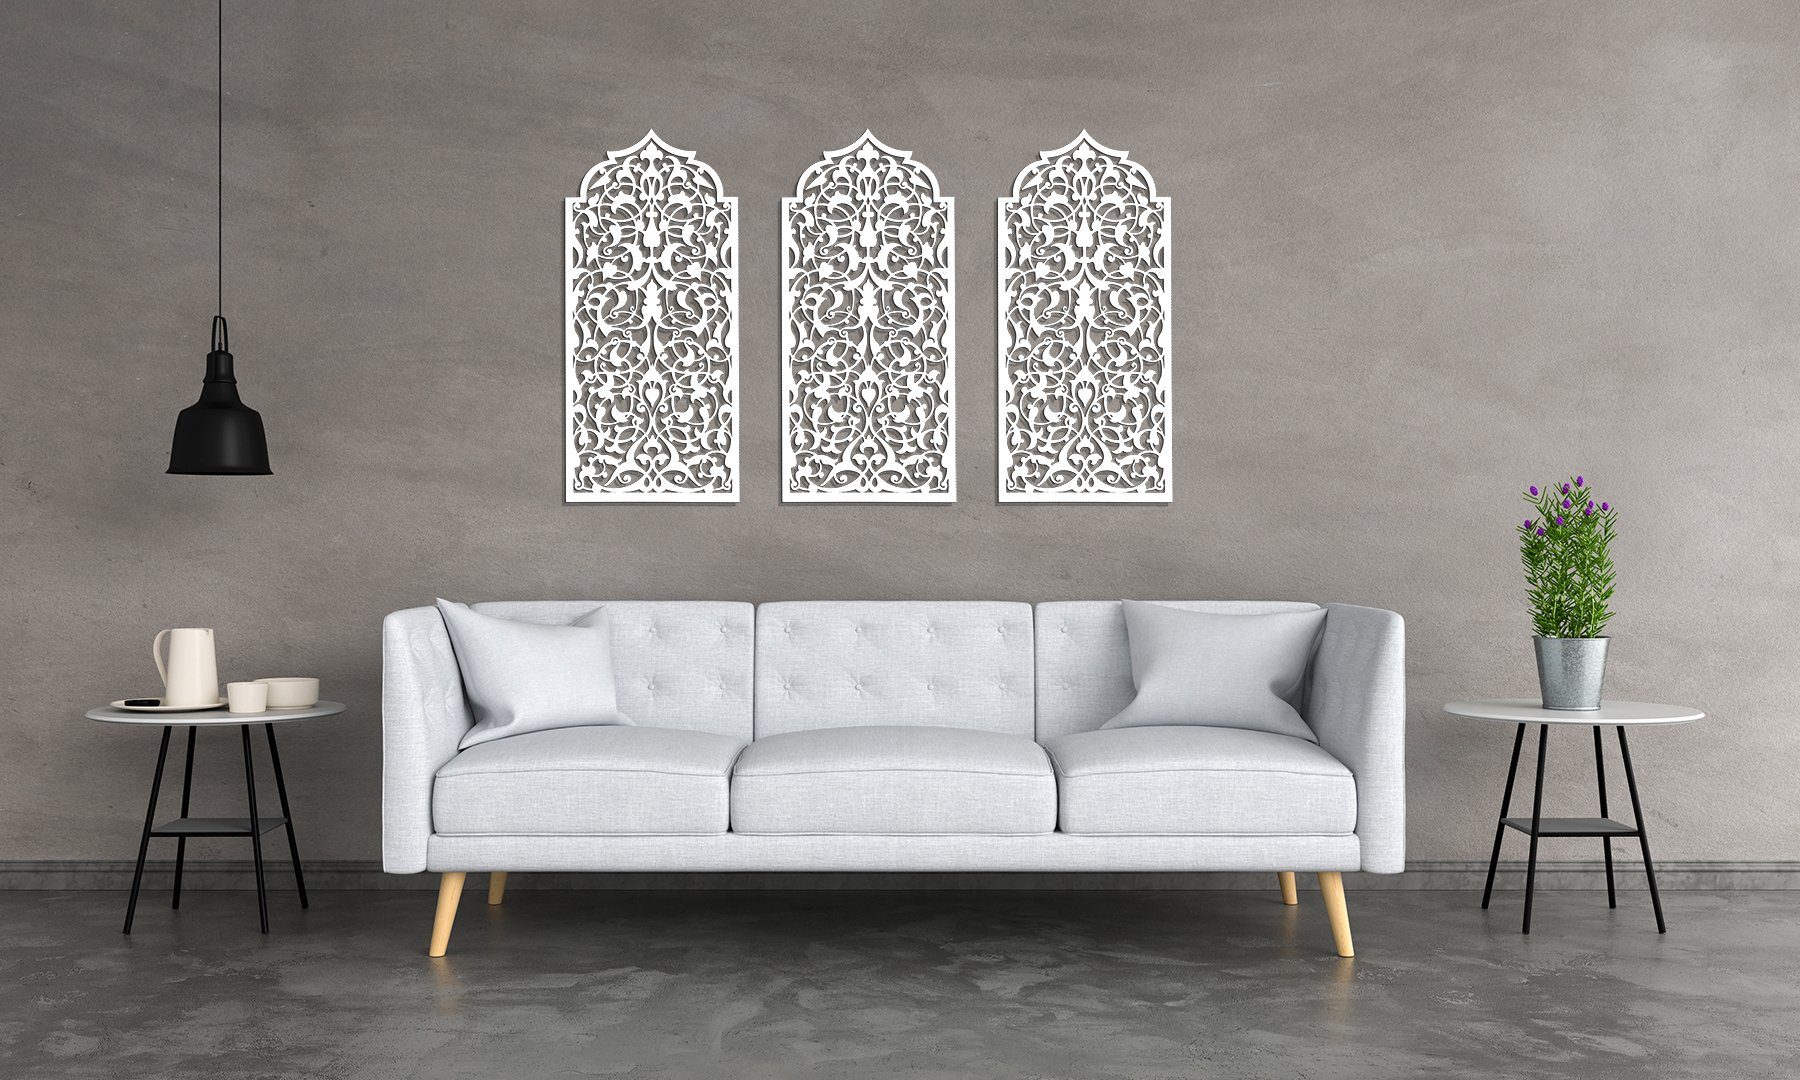 ORNAMENTI Mehrteilige Bilder 3D grosse Holzbild, Wanddeko, Marokkanisches Fenster, Handwerk